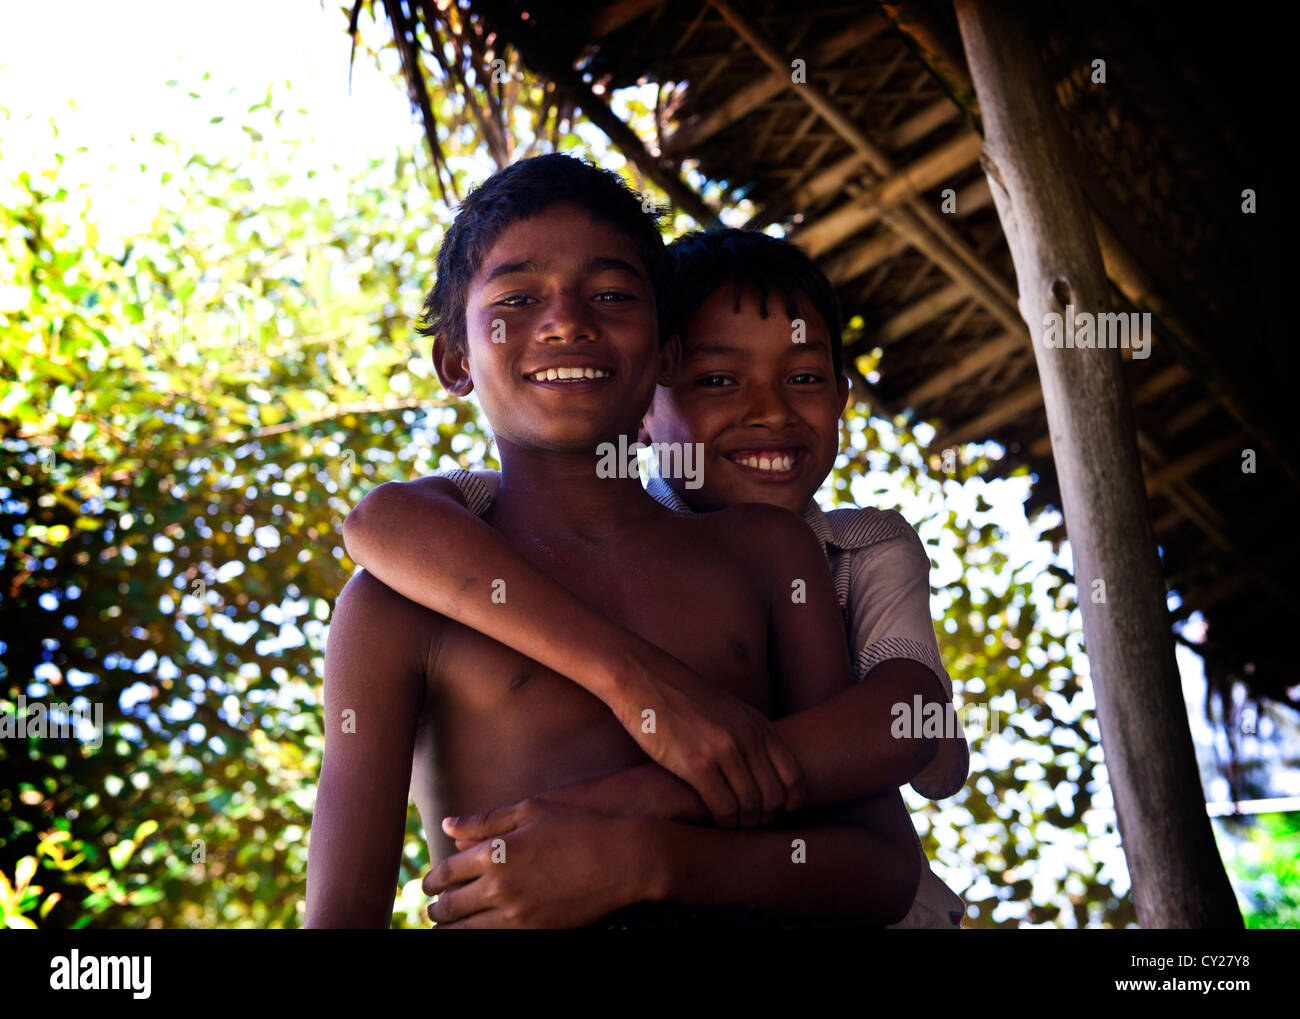 Les garçons de la rue, Cox's Bazar, Bangladesh Banque D'Images